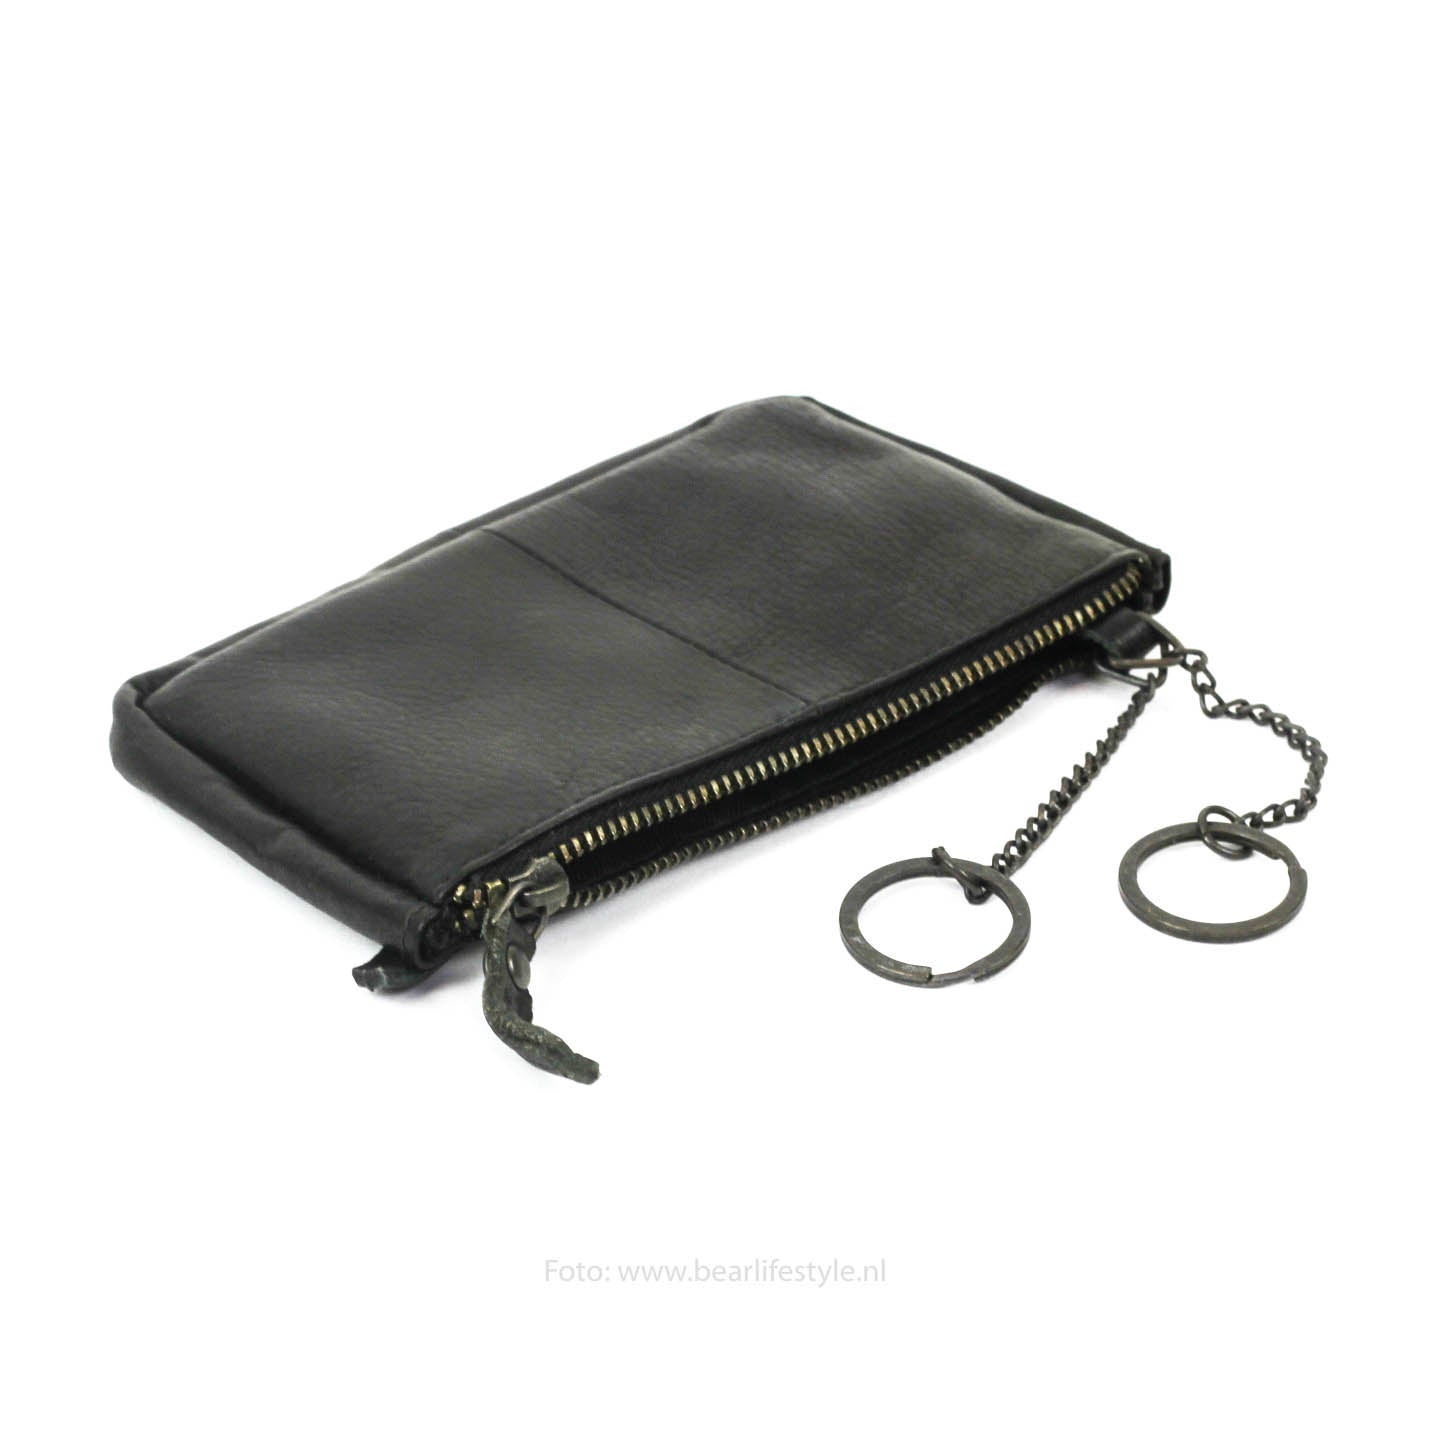 Key pouch 'Mila' black - CP 7090